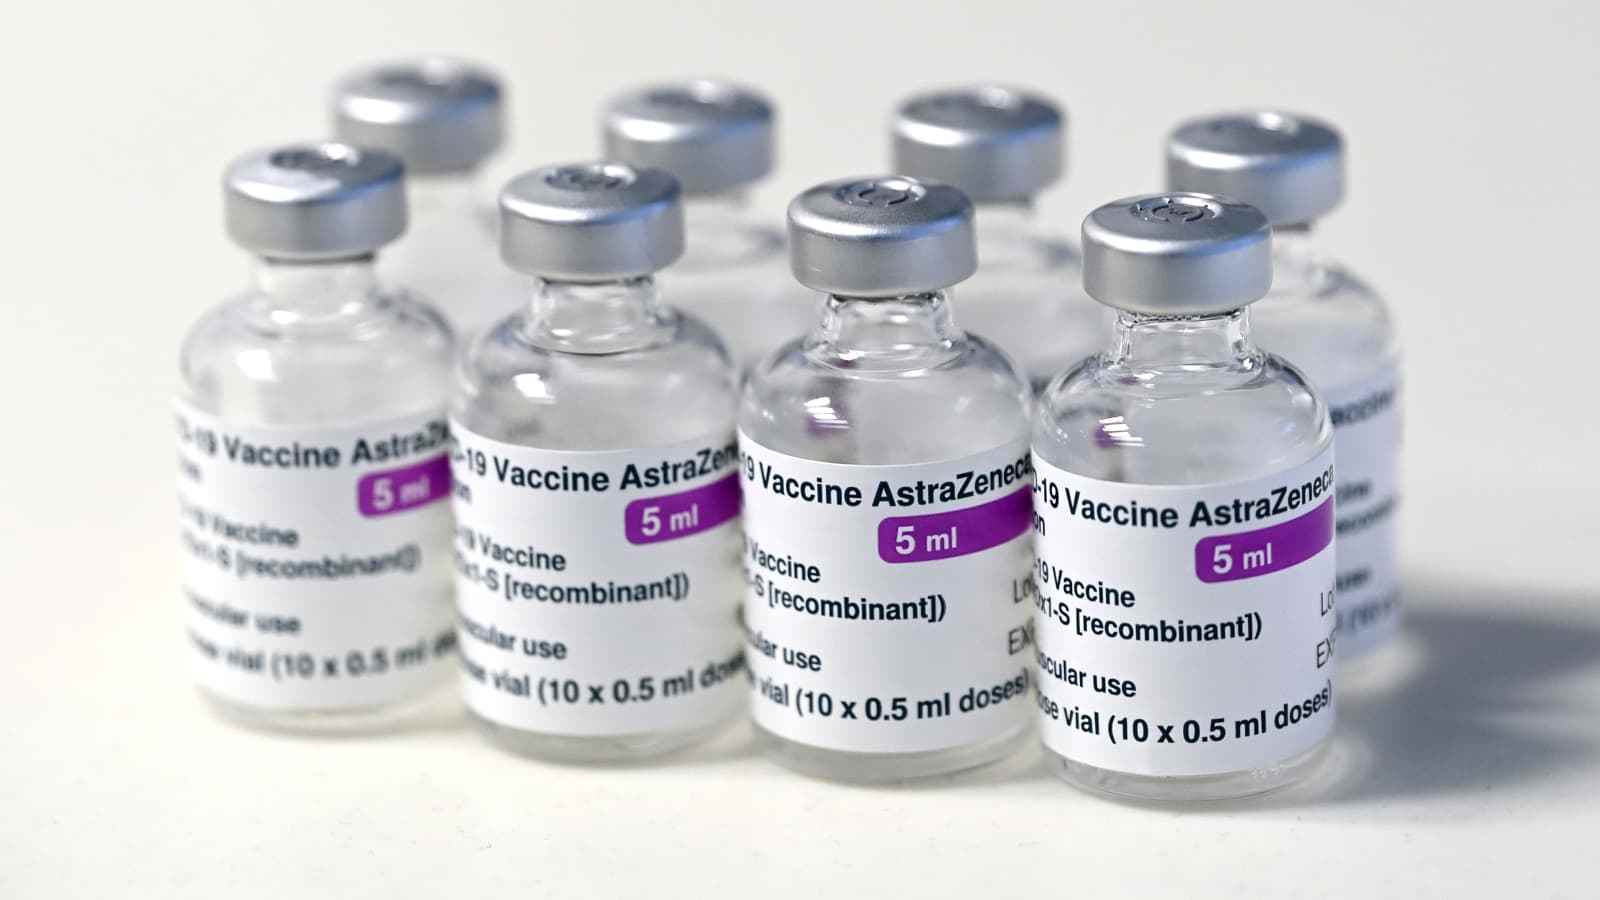 原创怀疑引发血凝问题,丹麦暂停使用阿斯利康新冠疫苗